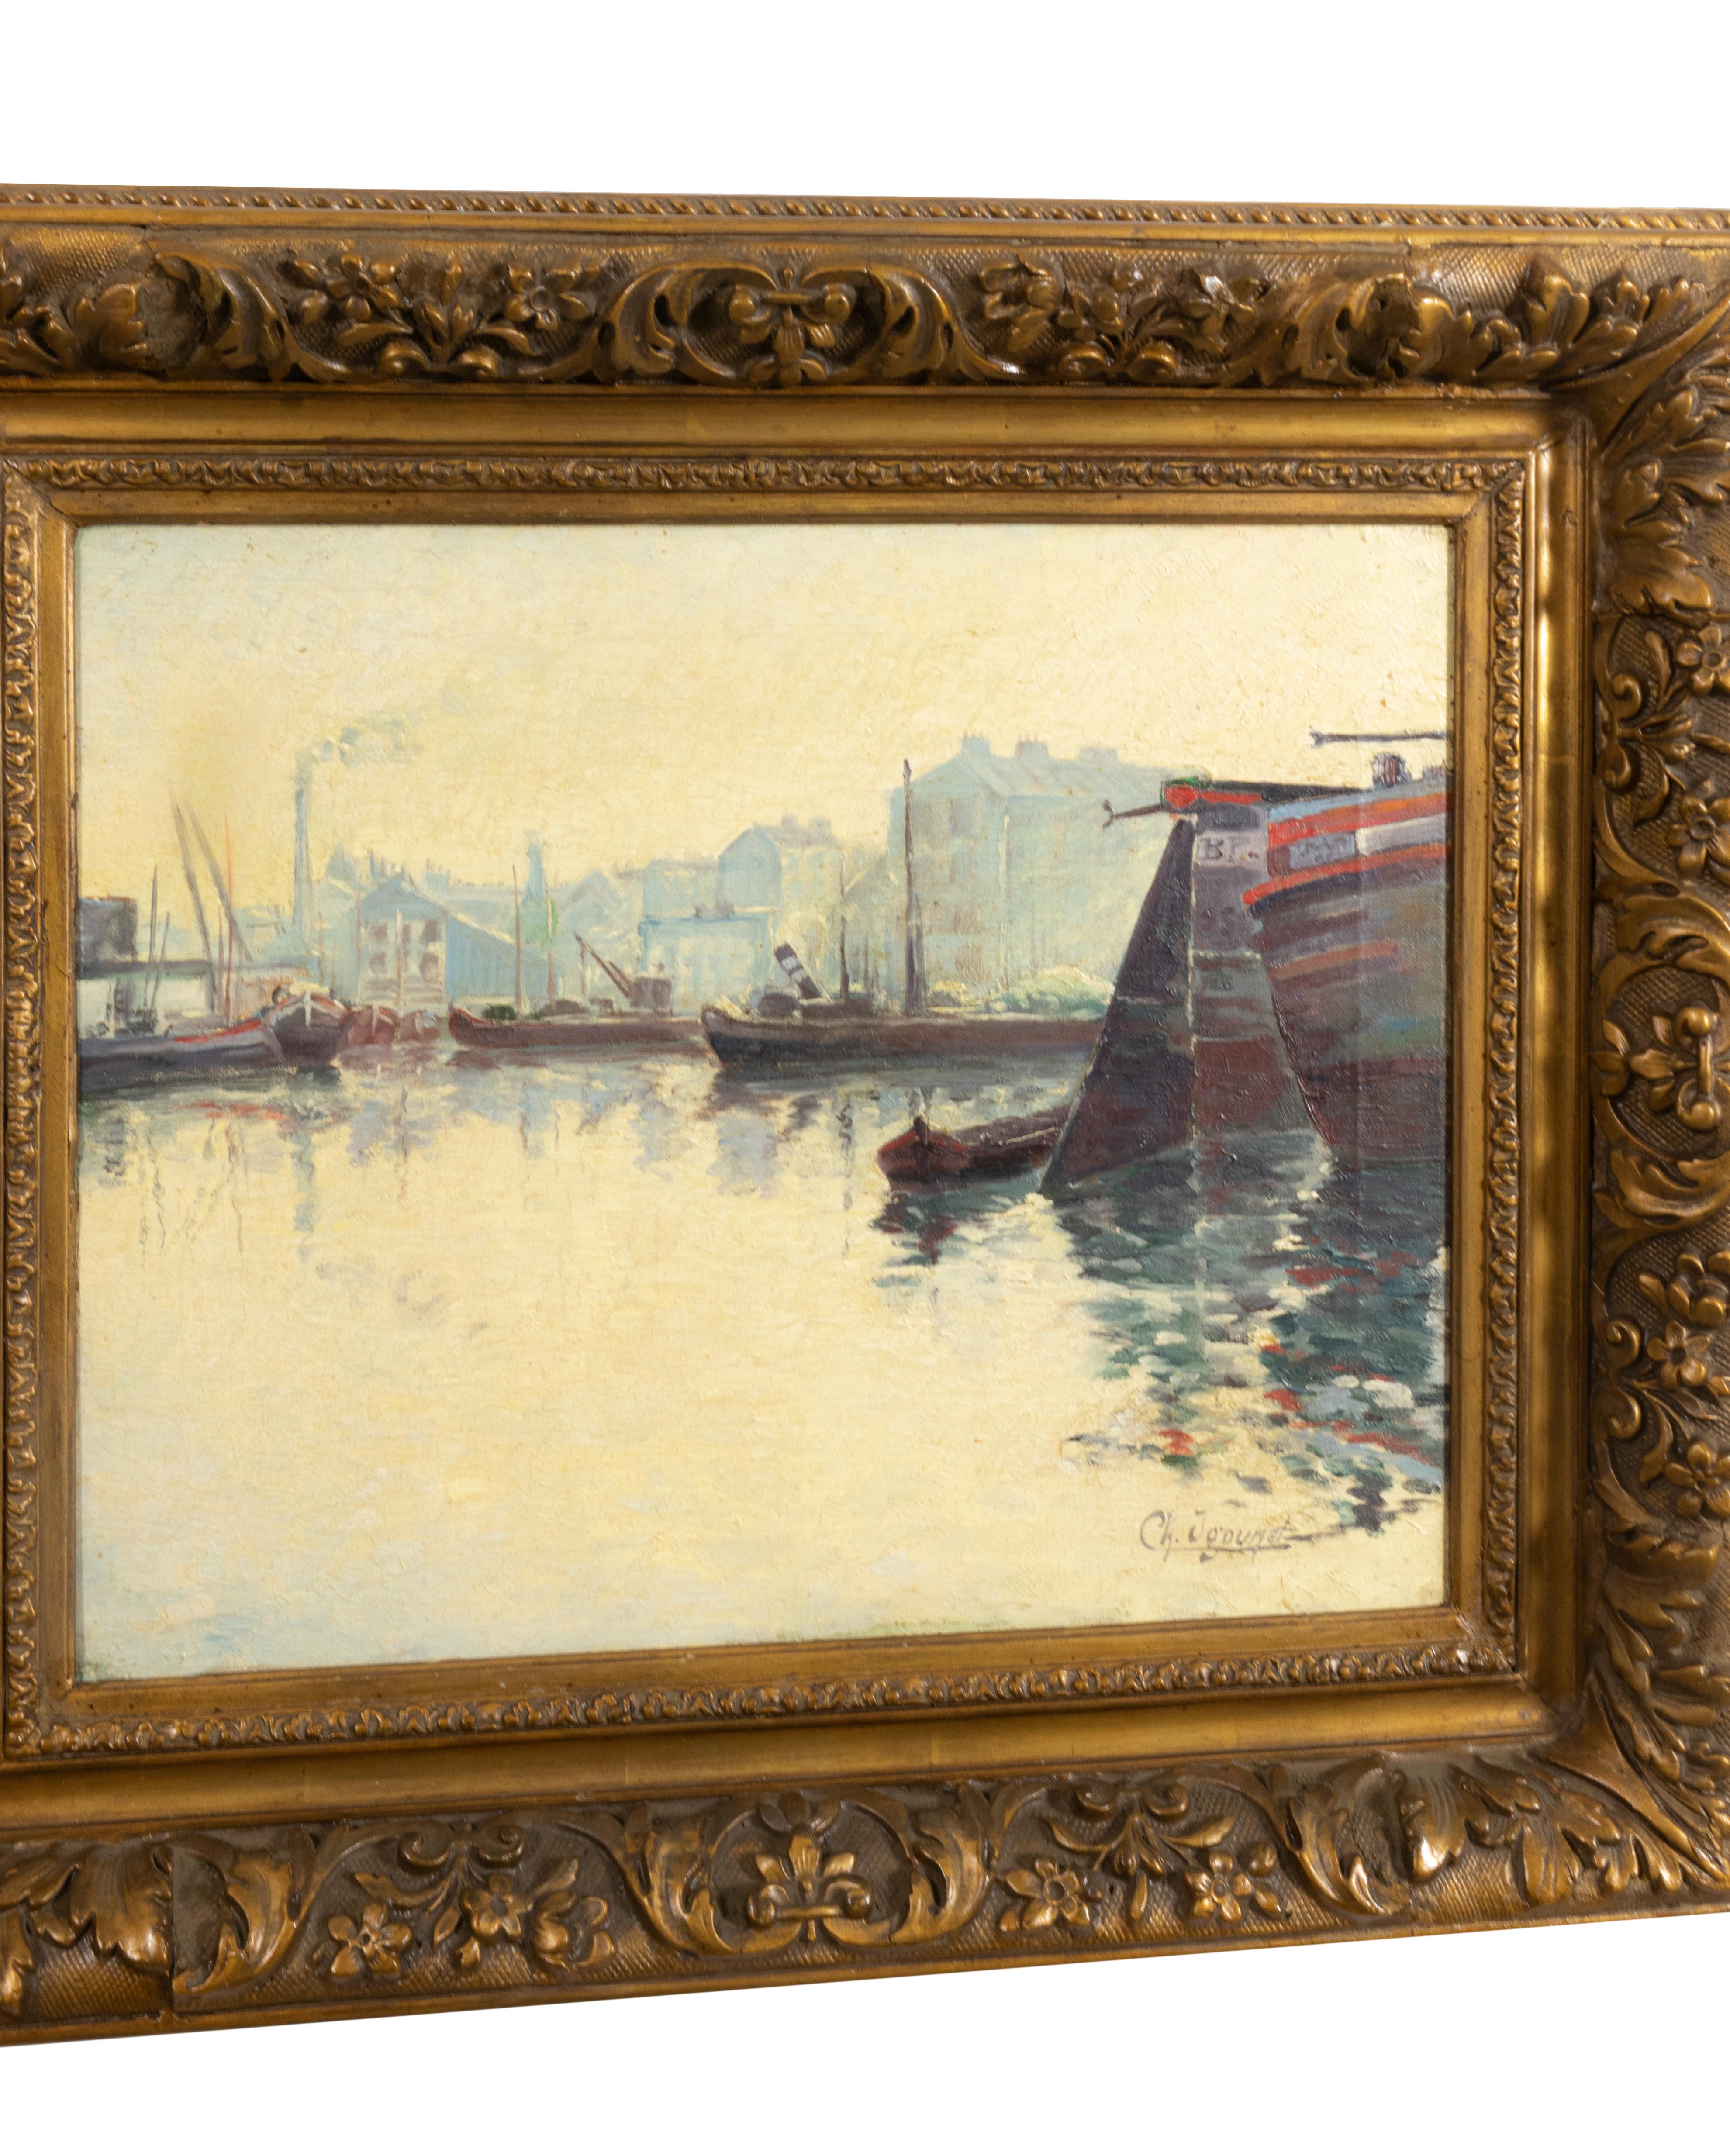 Une exquise peinture impressionniste française avec un thème nautique et des bateaux sombres sur la jetée - un paysage marin serein portant la signature 